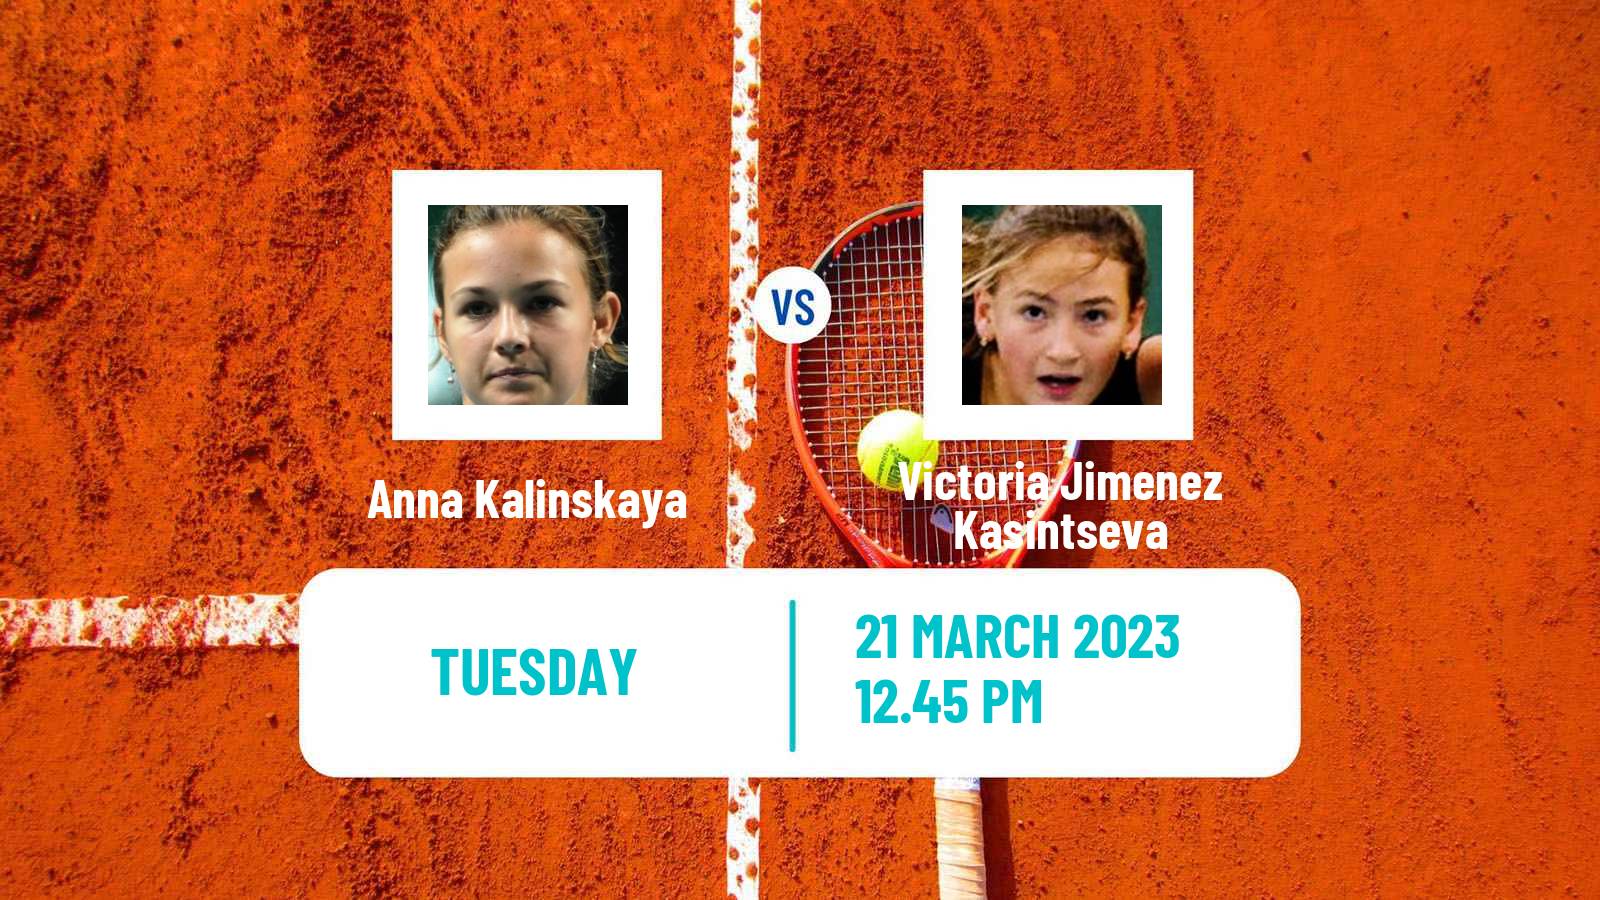 Tennis WTA Miami Anna Kalinskaya - Victoria Jimenez Kasintseva